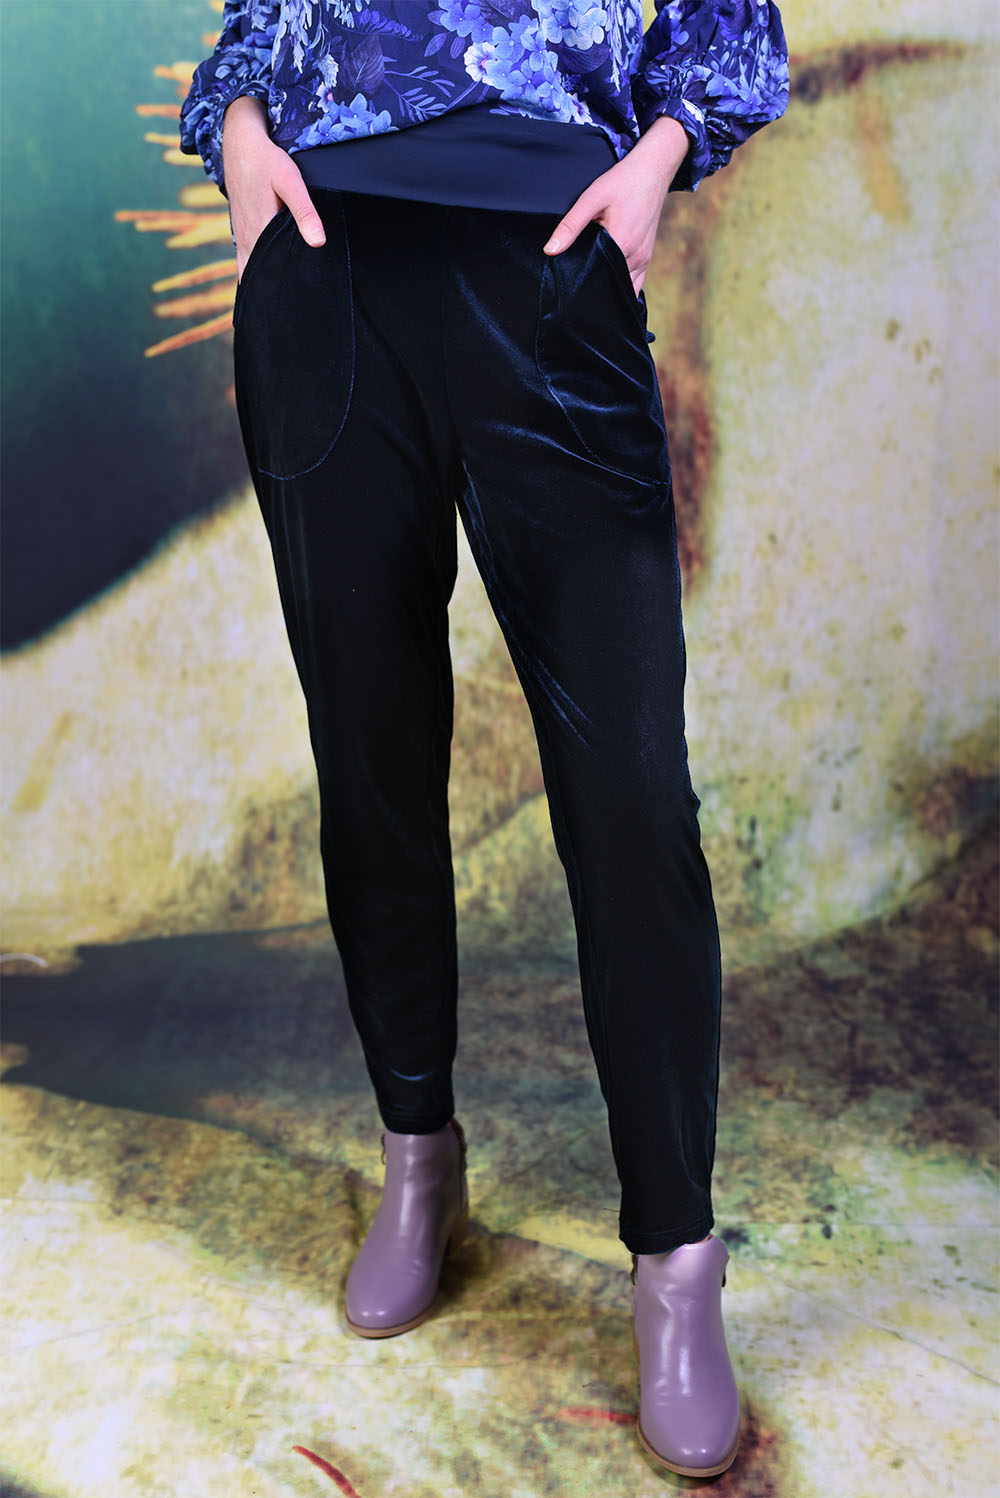 Model wearing the Annah Stretton Vesta Velvet pants in navy